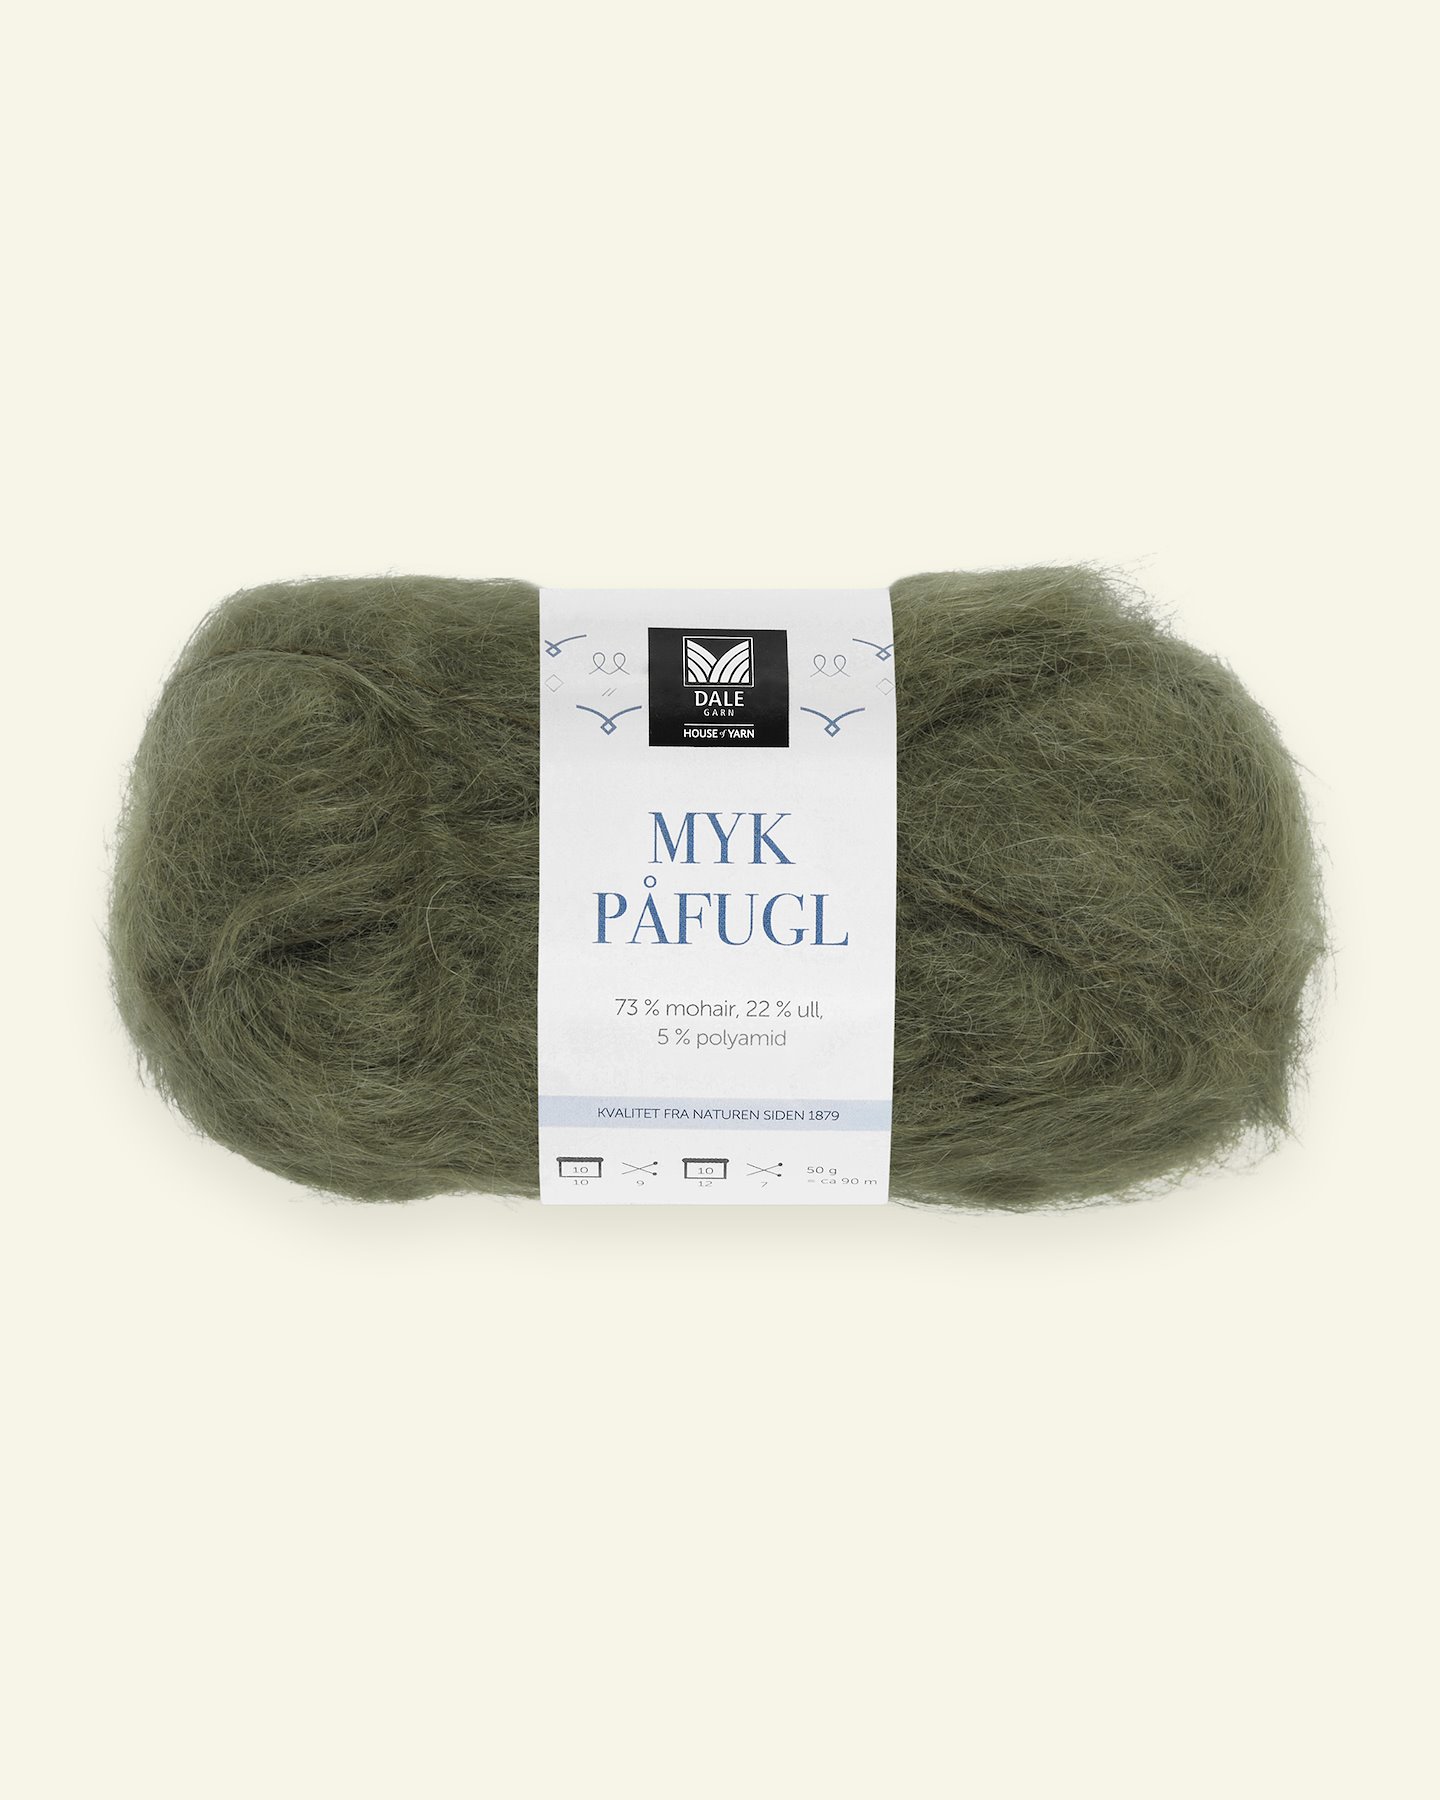 Dale Garn, mohair/wool yarn "Myk Påfugl", army green (7920) 90000250_pack